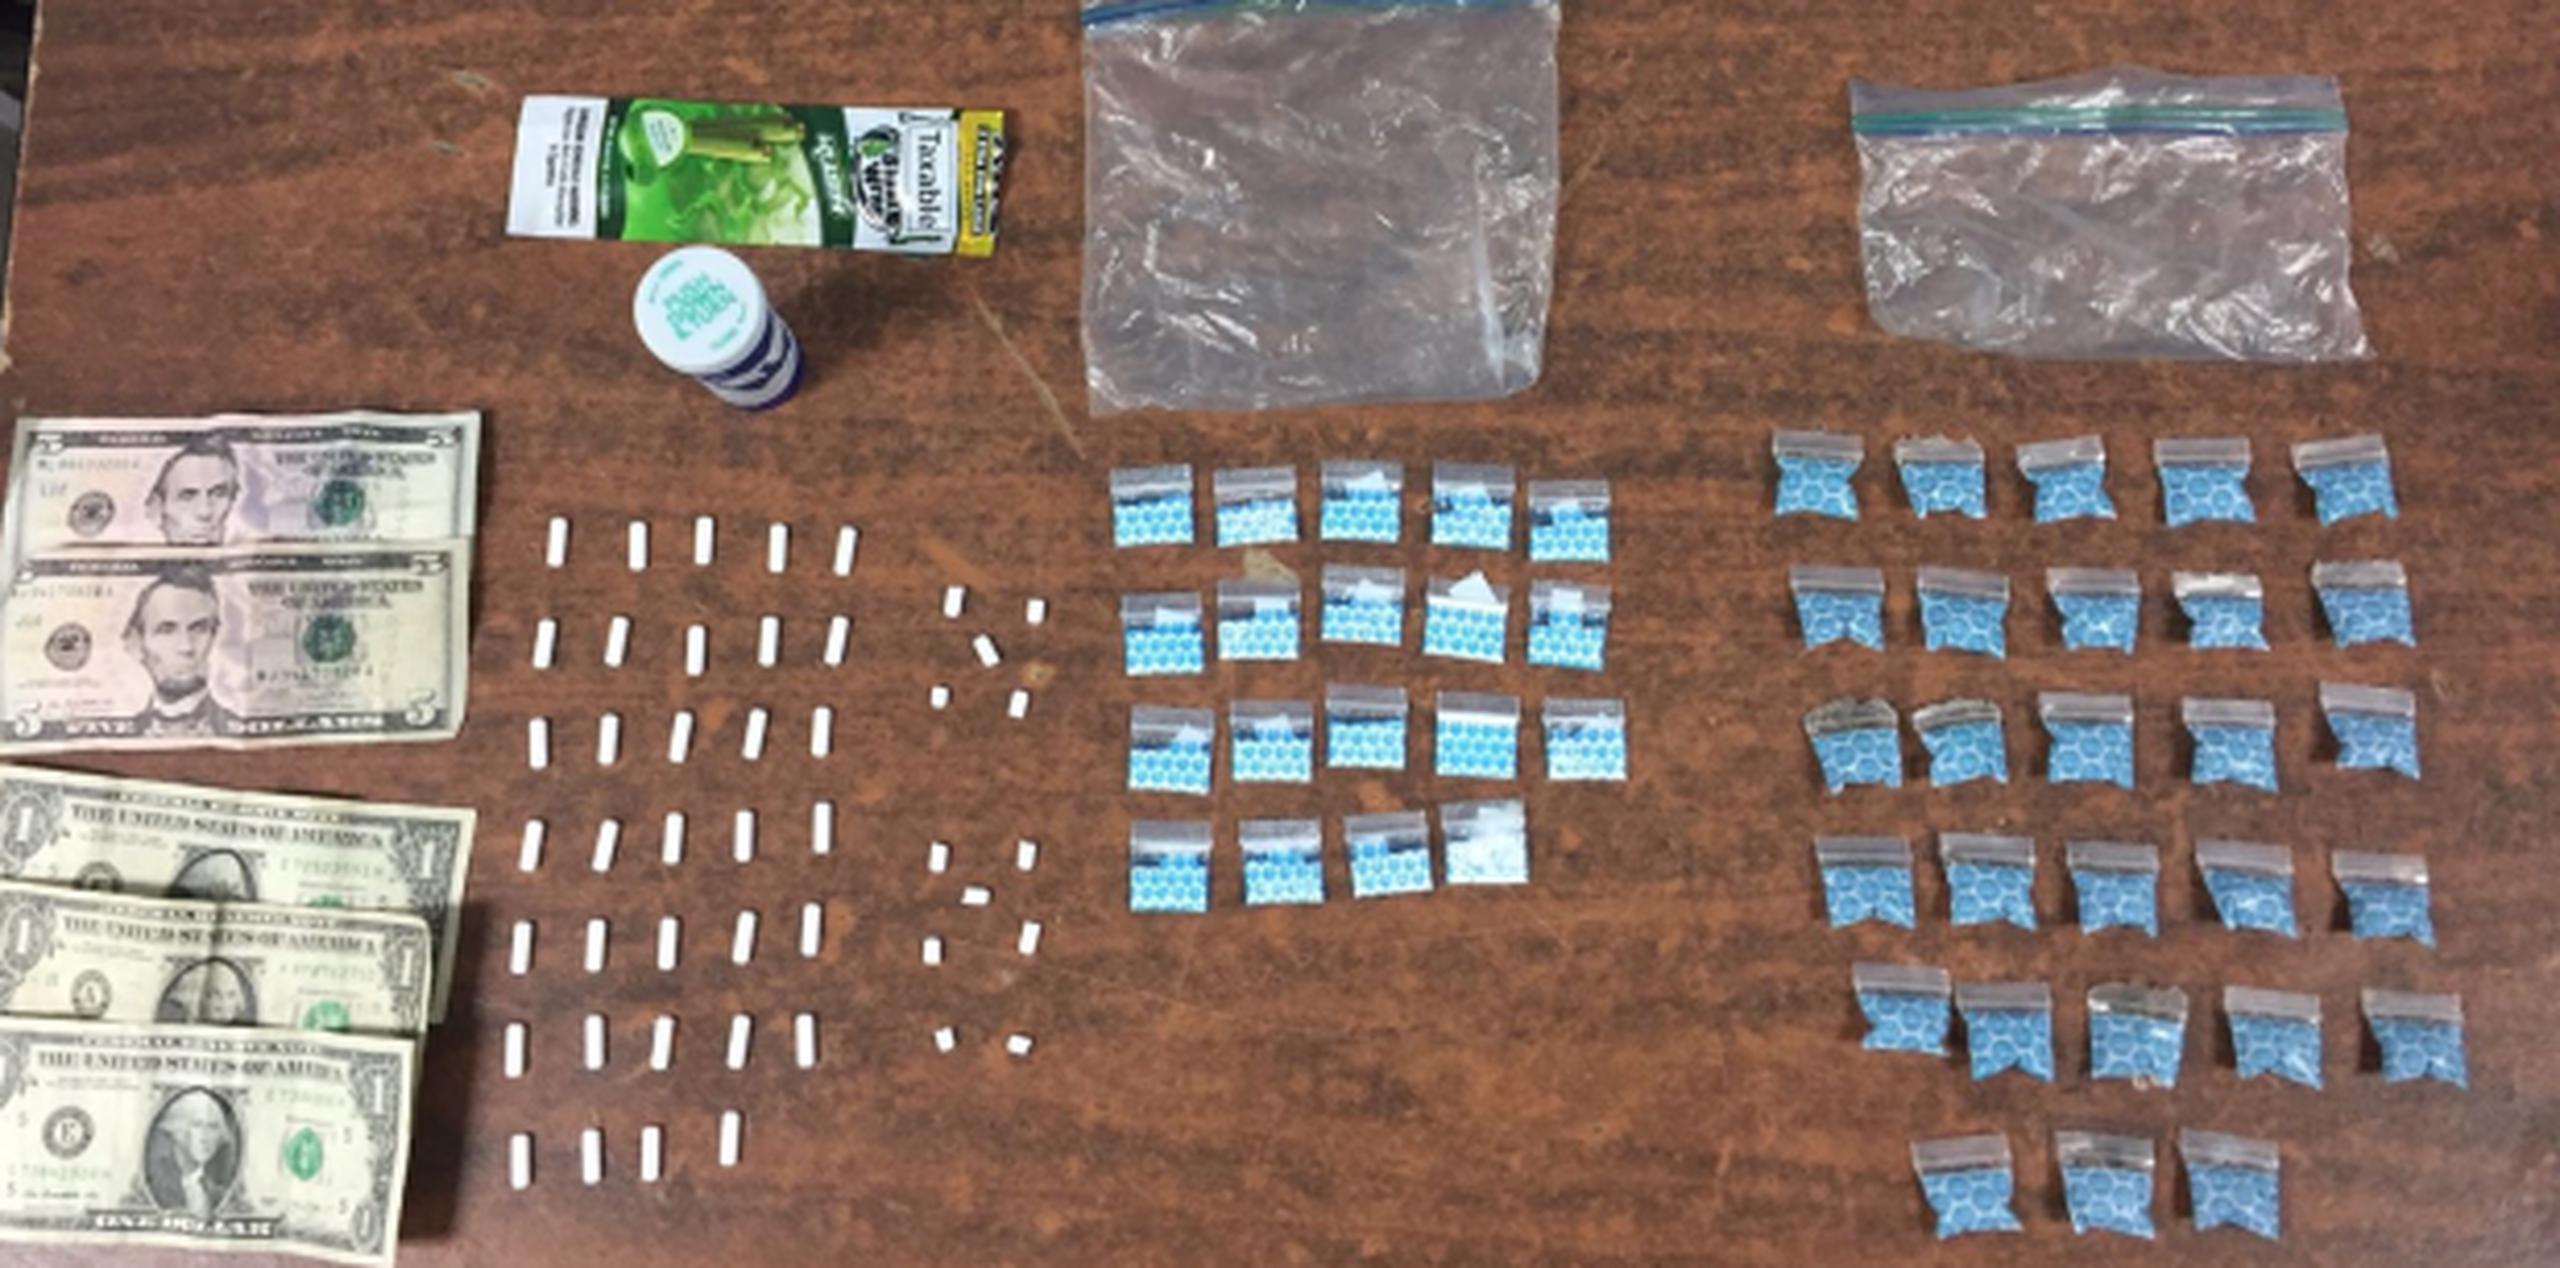 A los detenidos se les ocuparon 24 bolsas de crack, 21 deck de heroína, un medicamento controlado, $259.25 en efectivo y dos vehículos. (Suministrada)